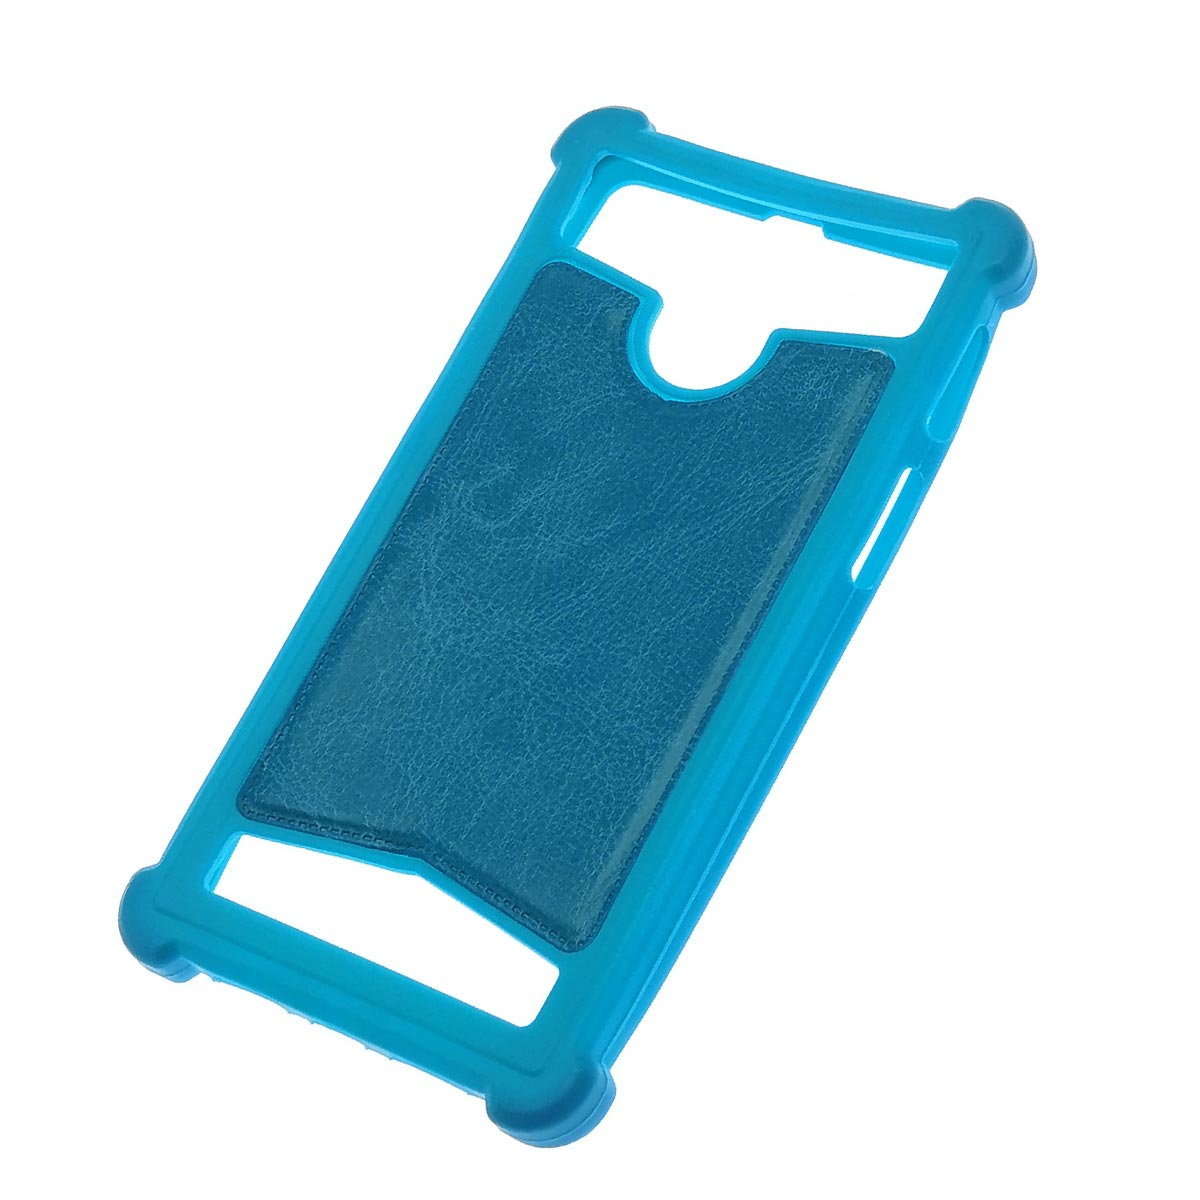 Чехол накладка универсальная 5.5 - 6.0 дюймов, силикон, экокожа, цвет голубой